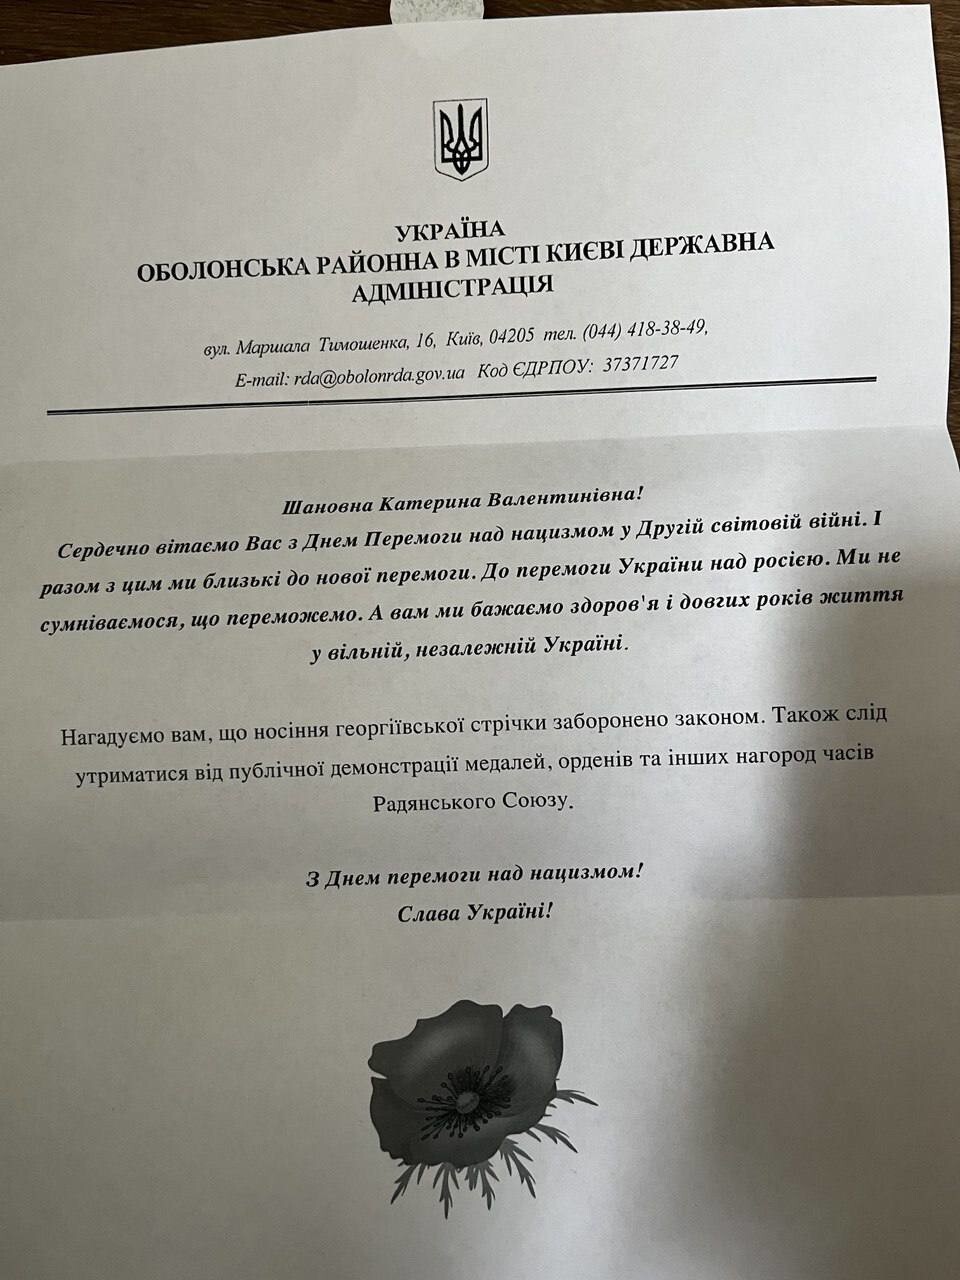 Вот так в Киеве поздравляет стариков районная администрация  Первый абзац – общие поздравительные слова, а второй – угрозы  «Напоминаем вам, что ношение георгиевской ленты запрещено законом. Также следует воздержаться от публичной демонстрации медале